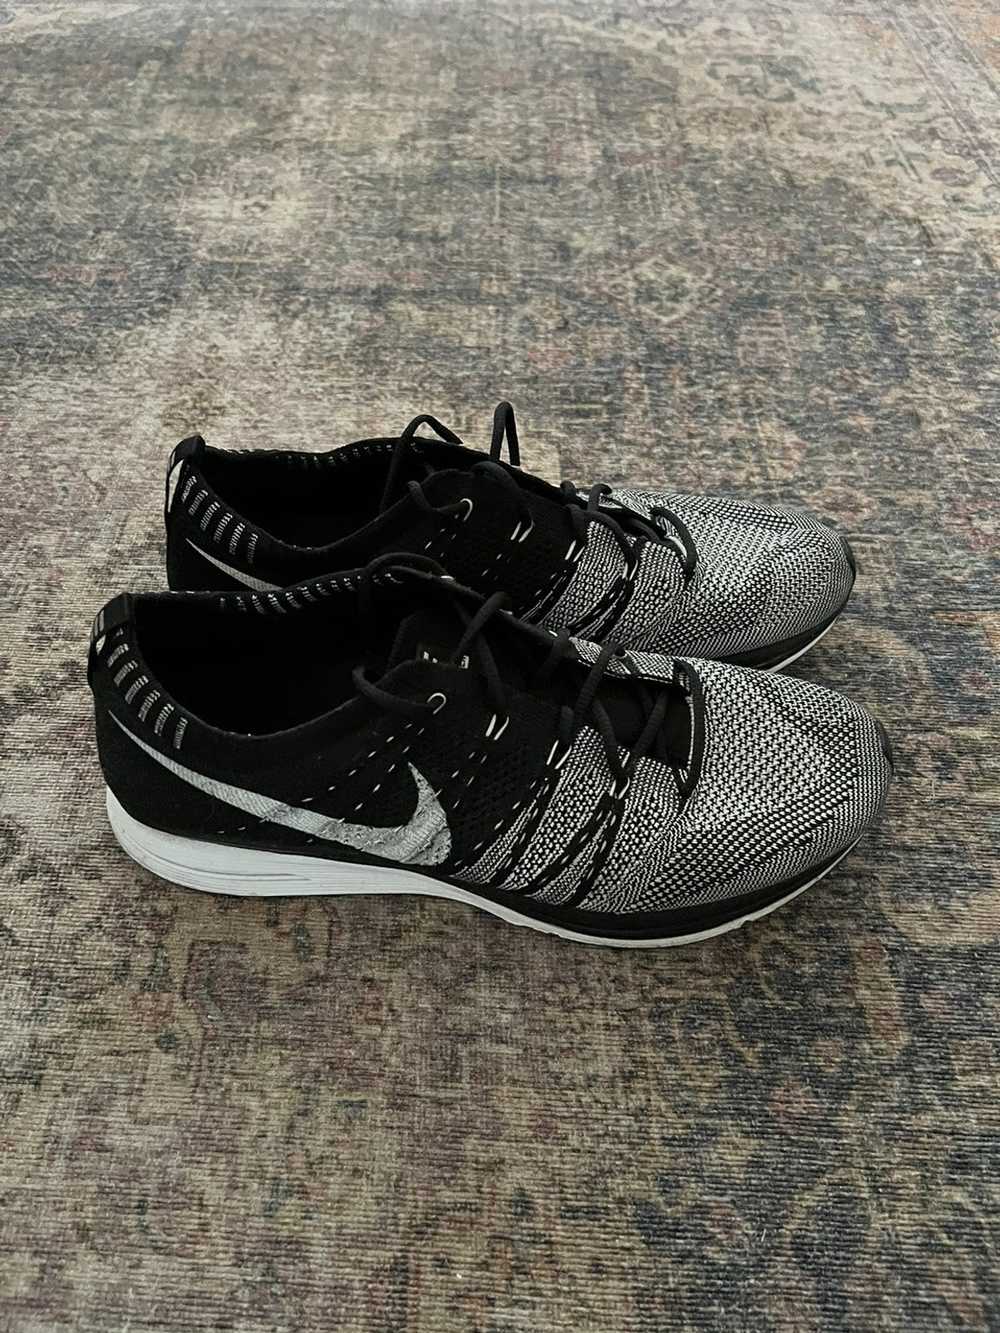 Nike Nike Flyknit Trainer+ 2012 Black/White Size 9 - image 4